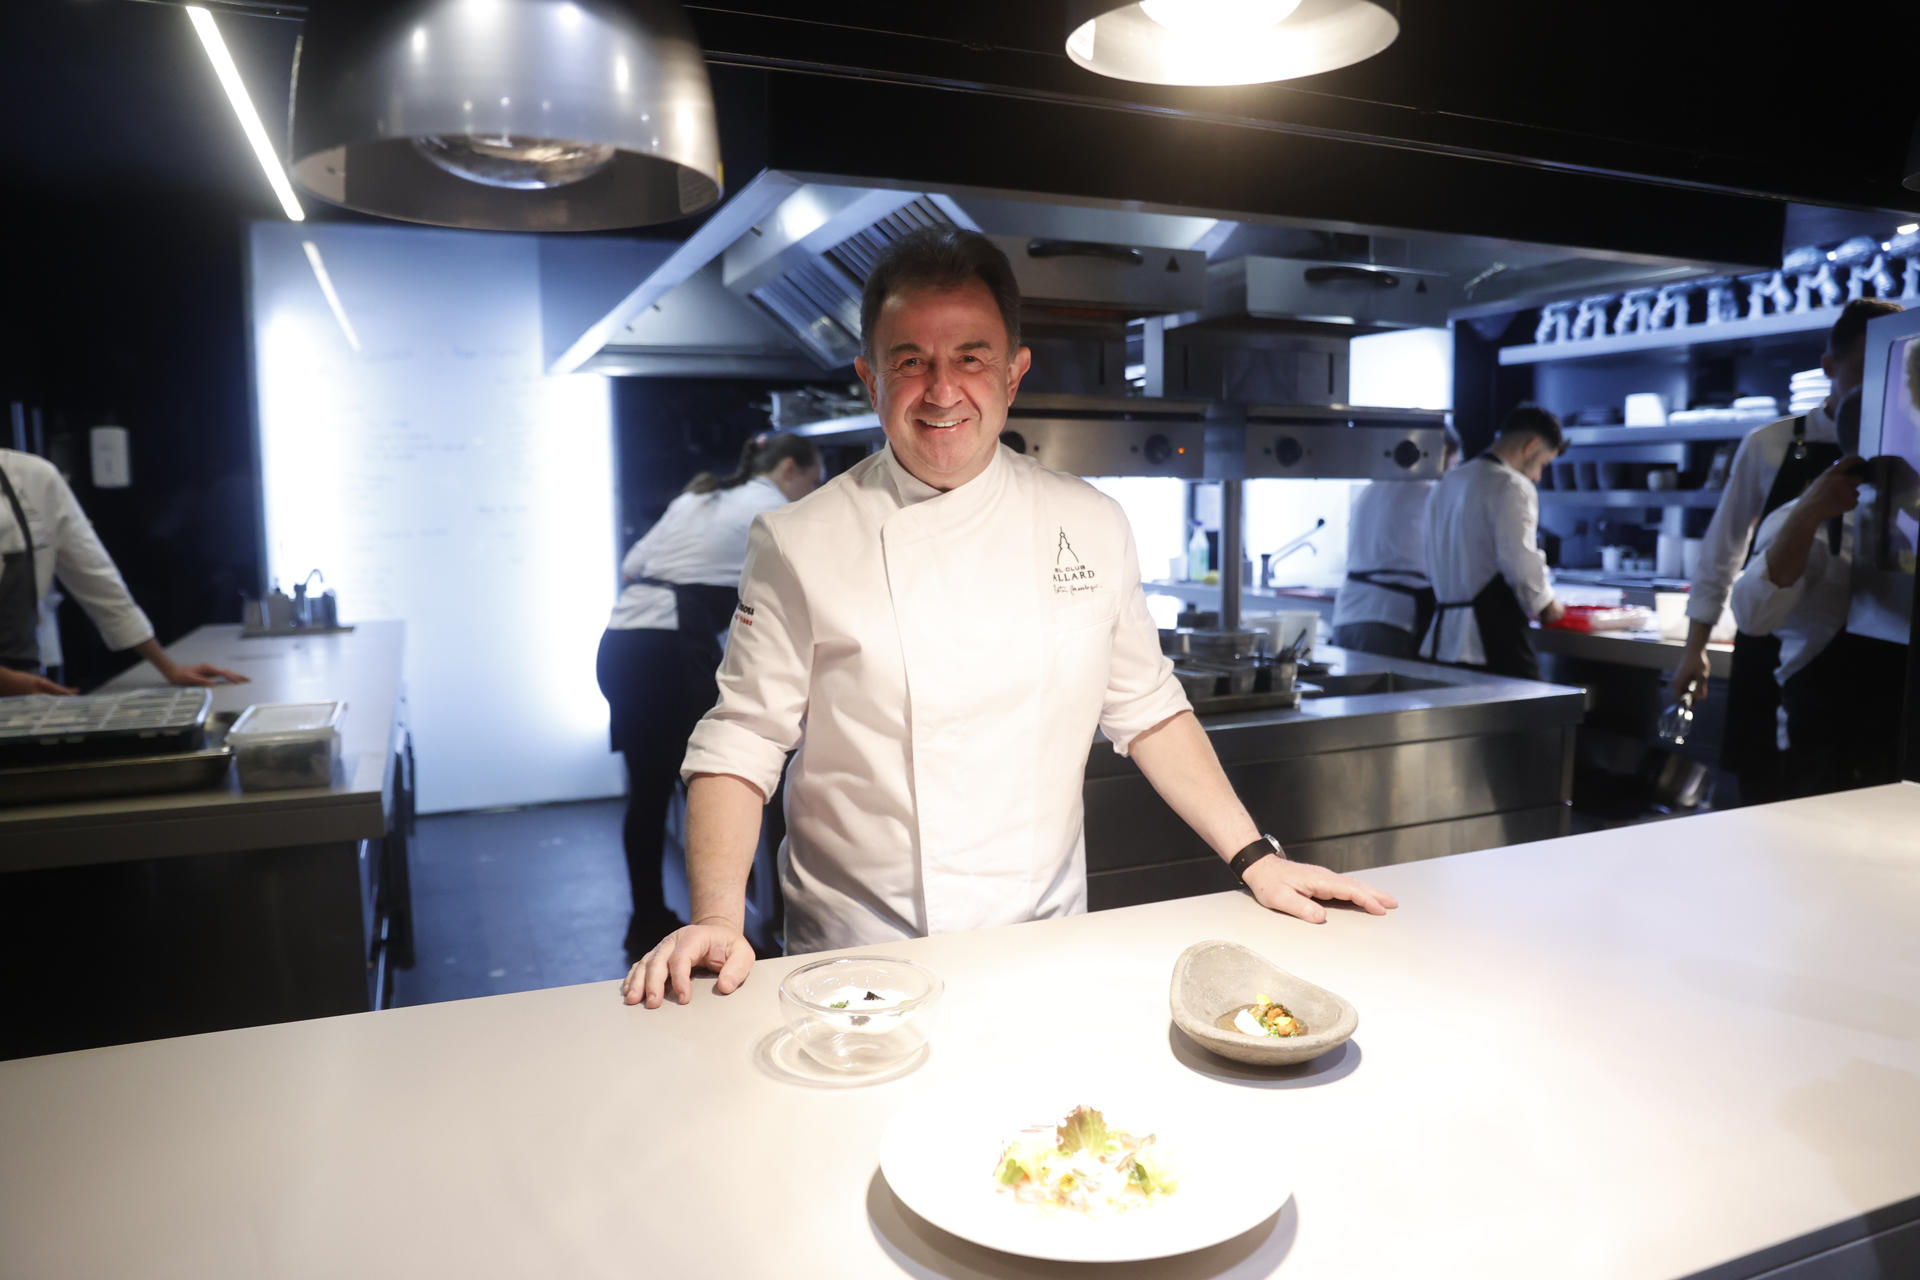 El chef Martín Berasategui posa durante una entrevista con EFE este martes en Madrid, tras asumir la dirección del restaurante El Club Allard, que tuvo dos estrellas Michelin, con la intención de recuperar su "peso en la historia culinaria de nuestro país". EFE/ Juan Carlos Hidalgo
